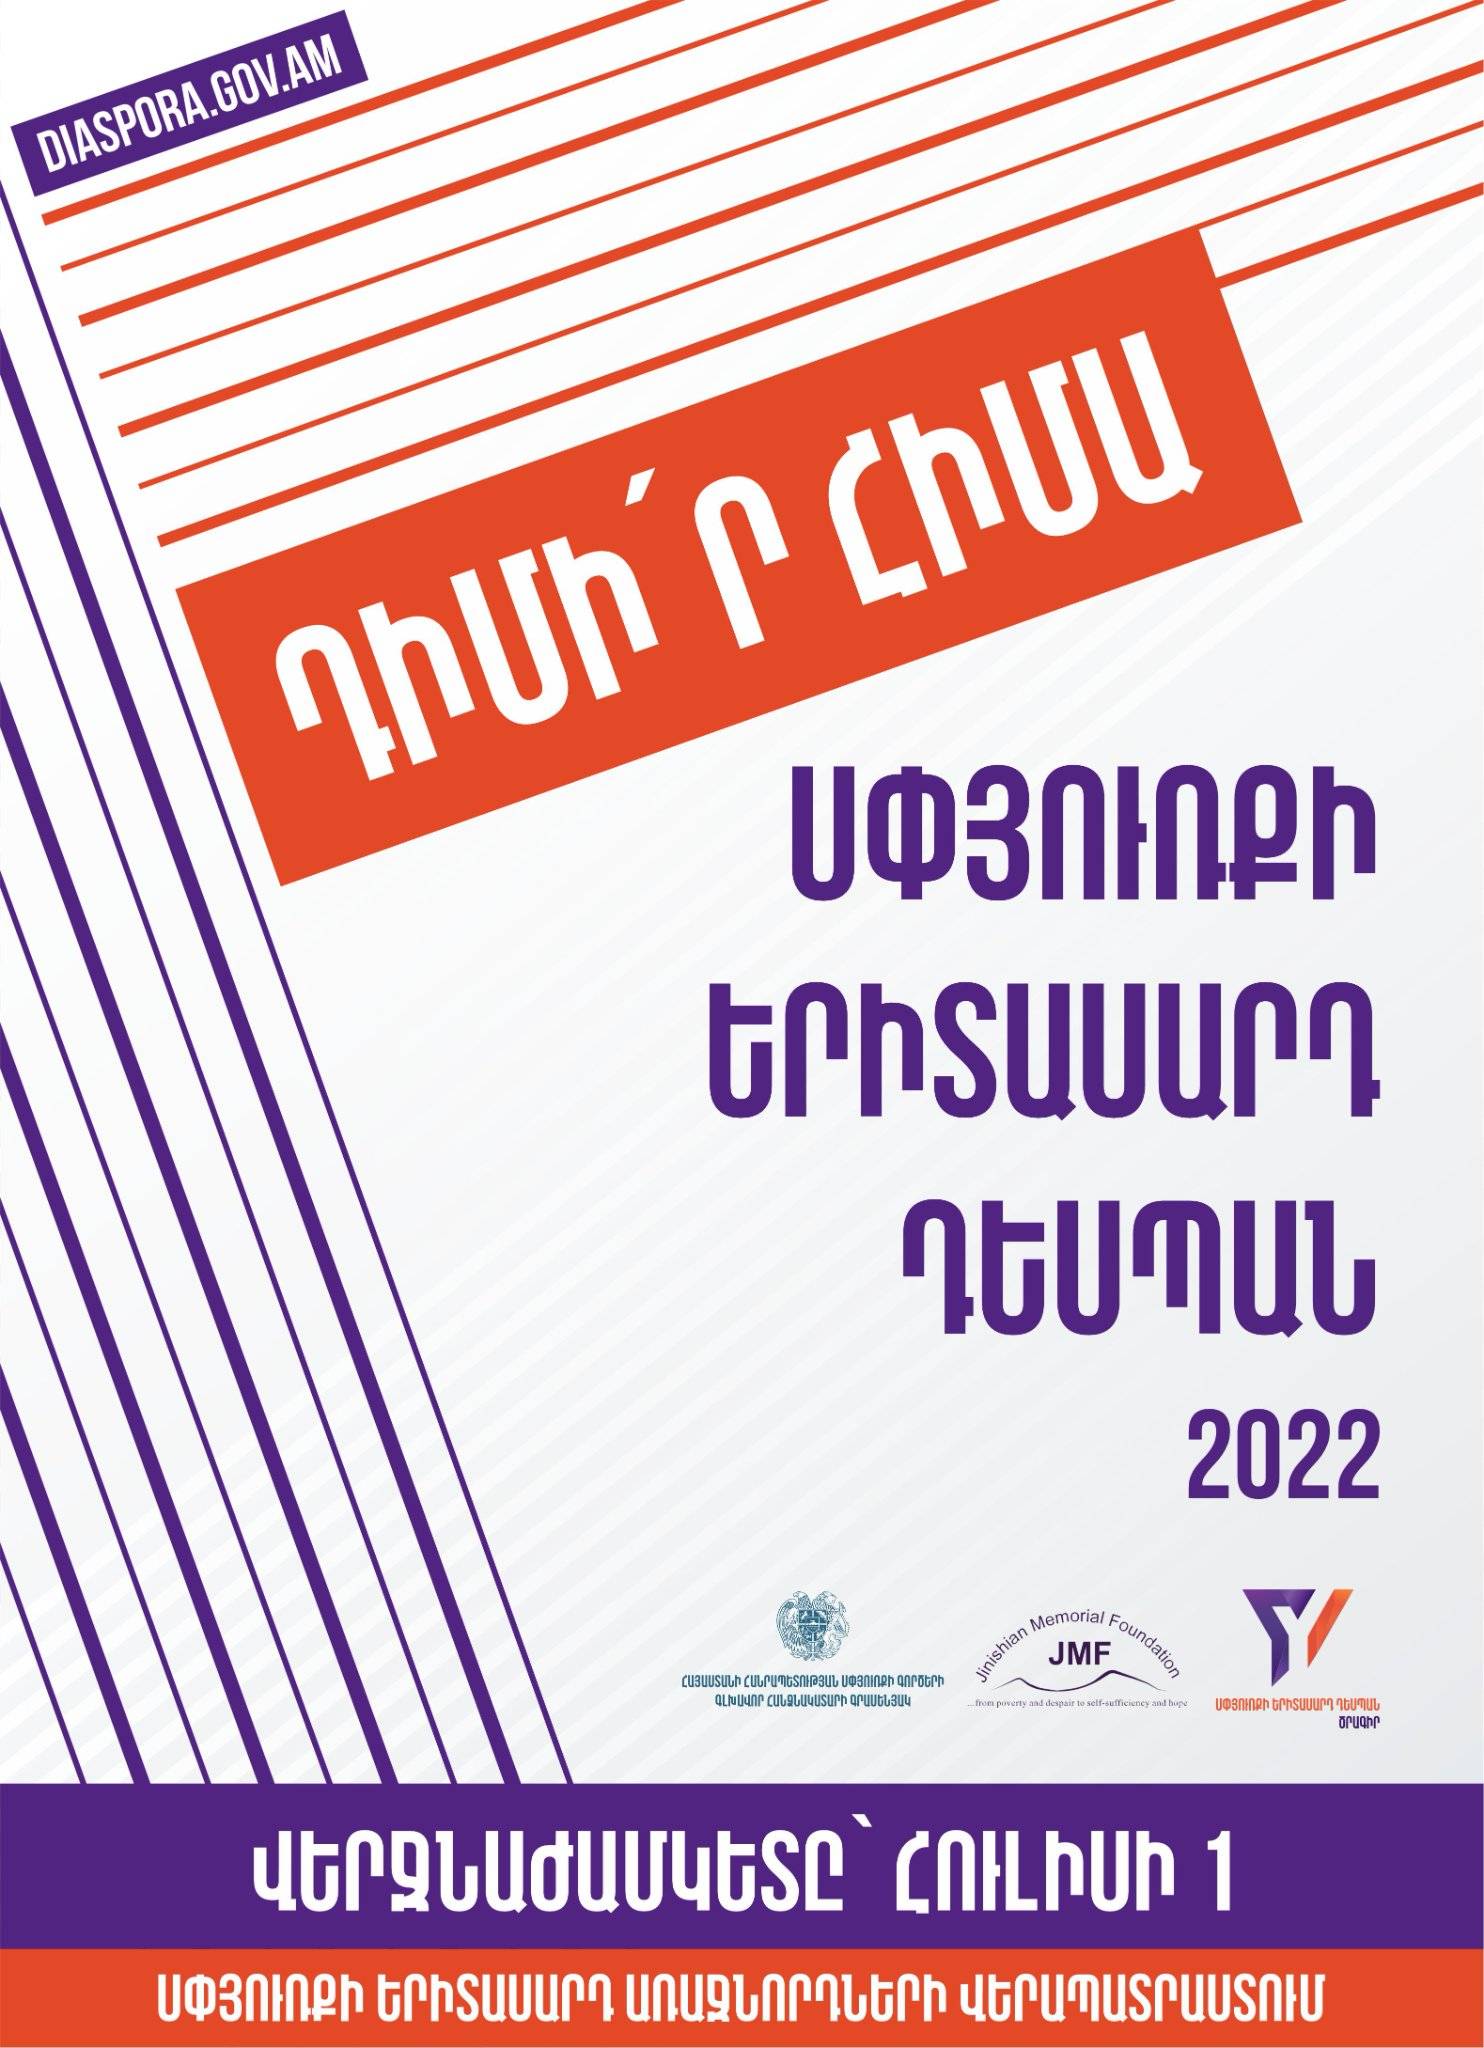 Diaspora Youth Ambassador 2022